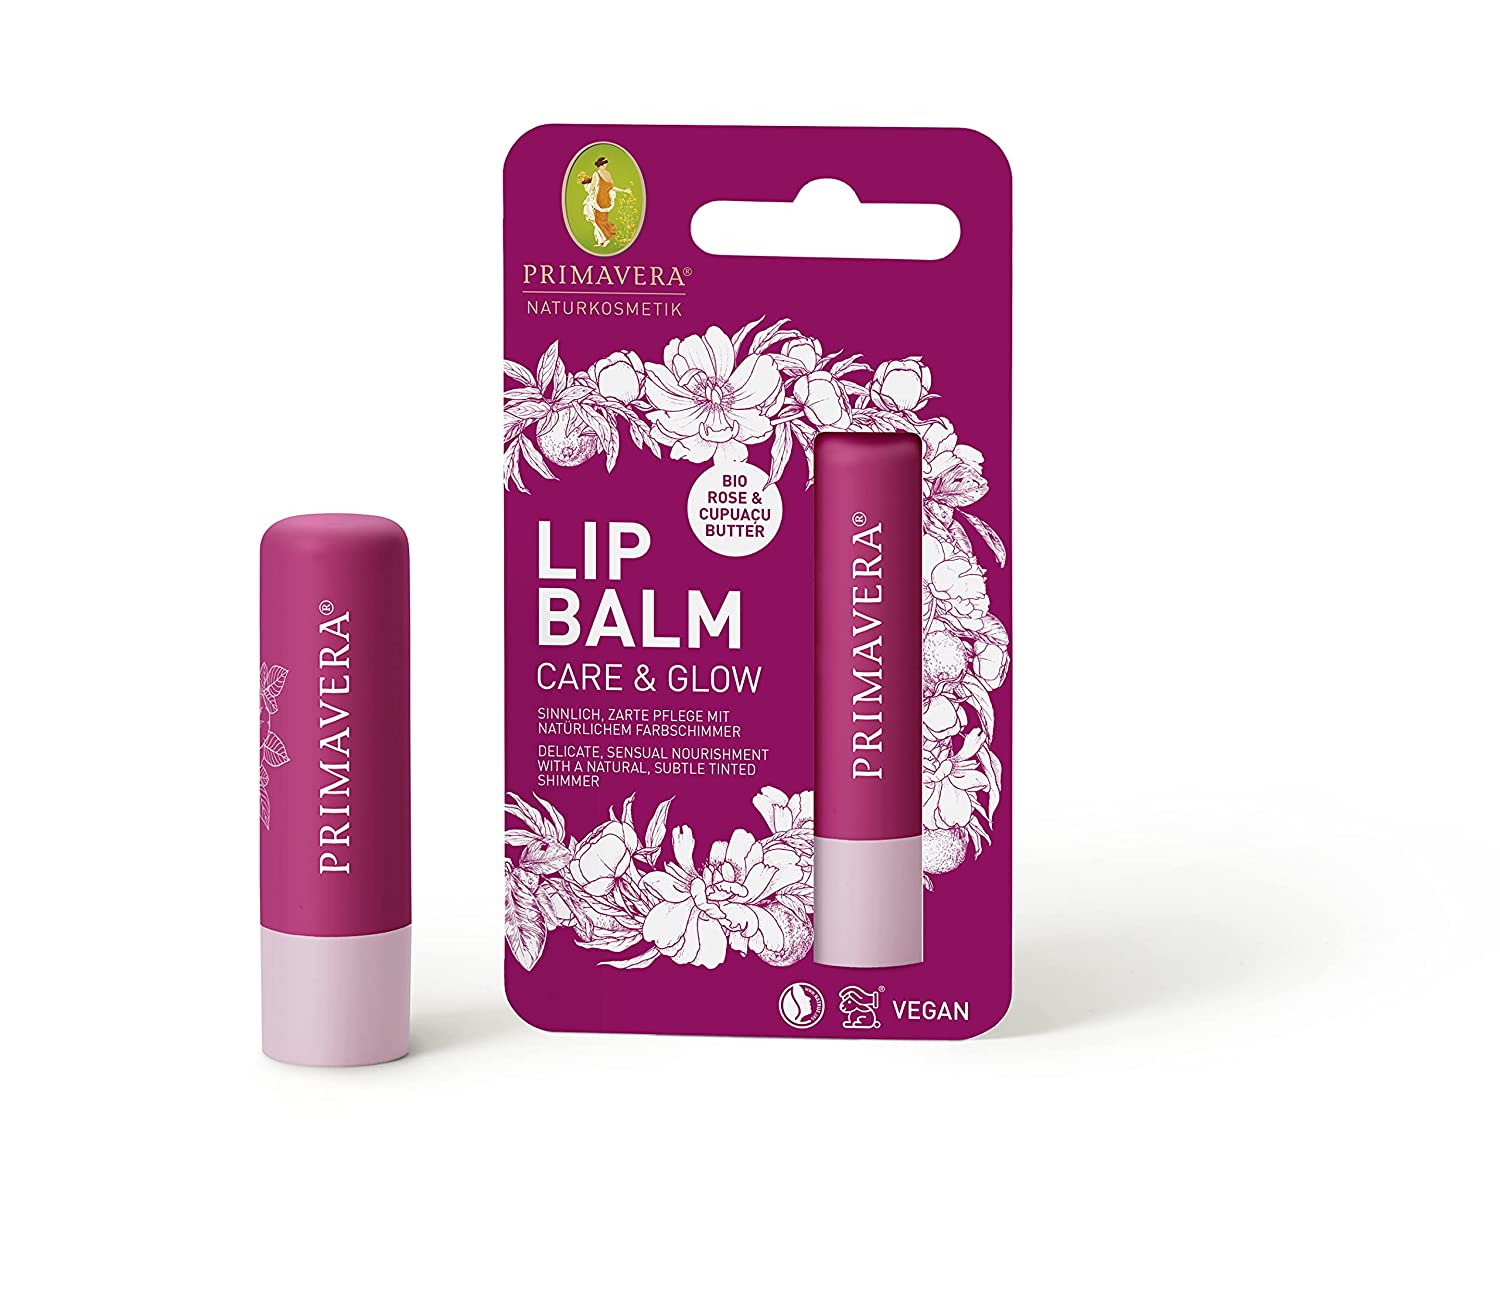 PRIMAVERA Lip Balm Care & Glow 4,7 g vegan - Naturkosmetik - pflegend, natürlicher Farbschimmer, zarte Lippenpflege